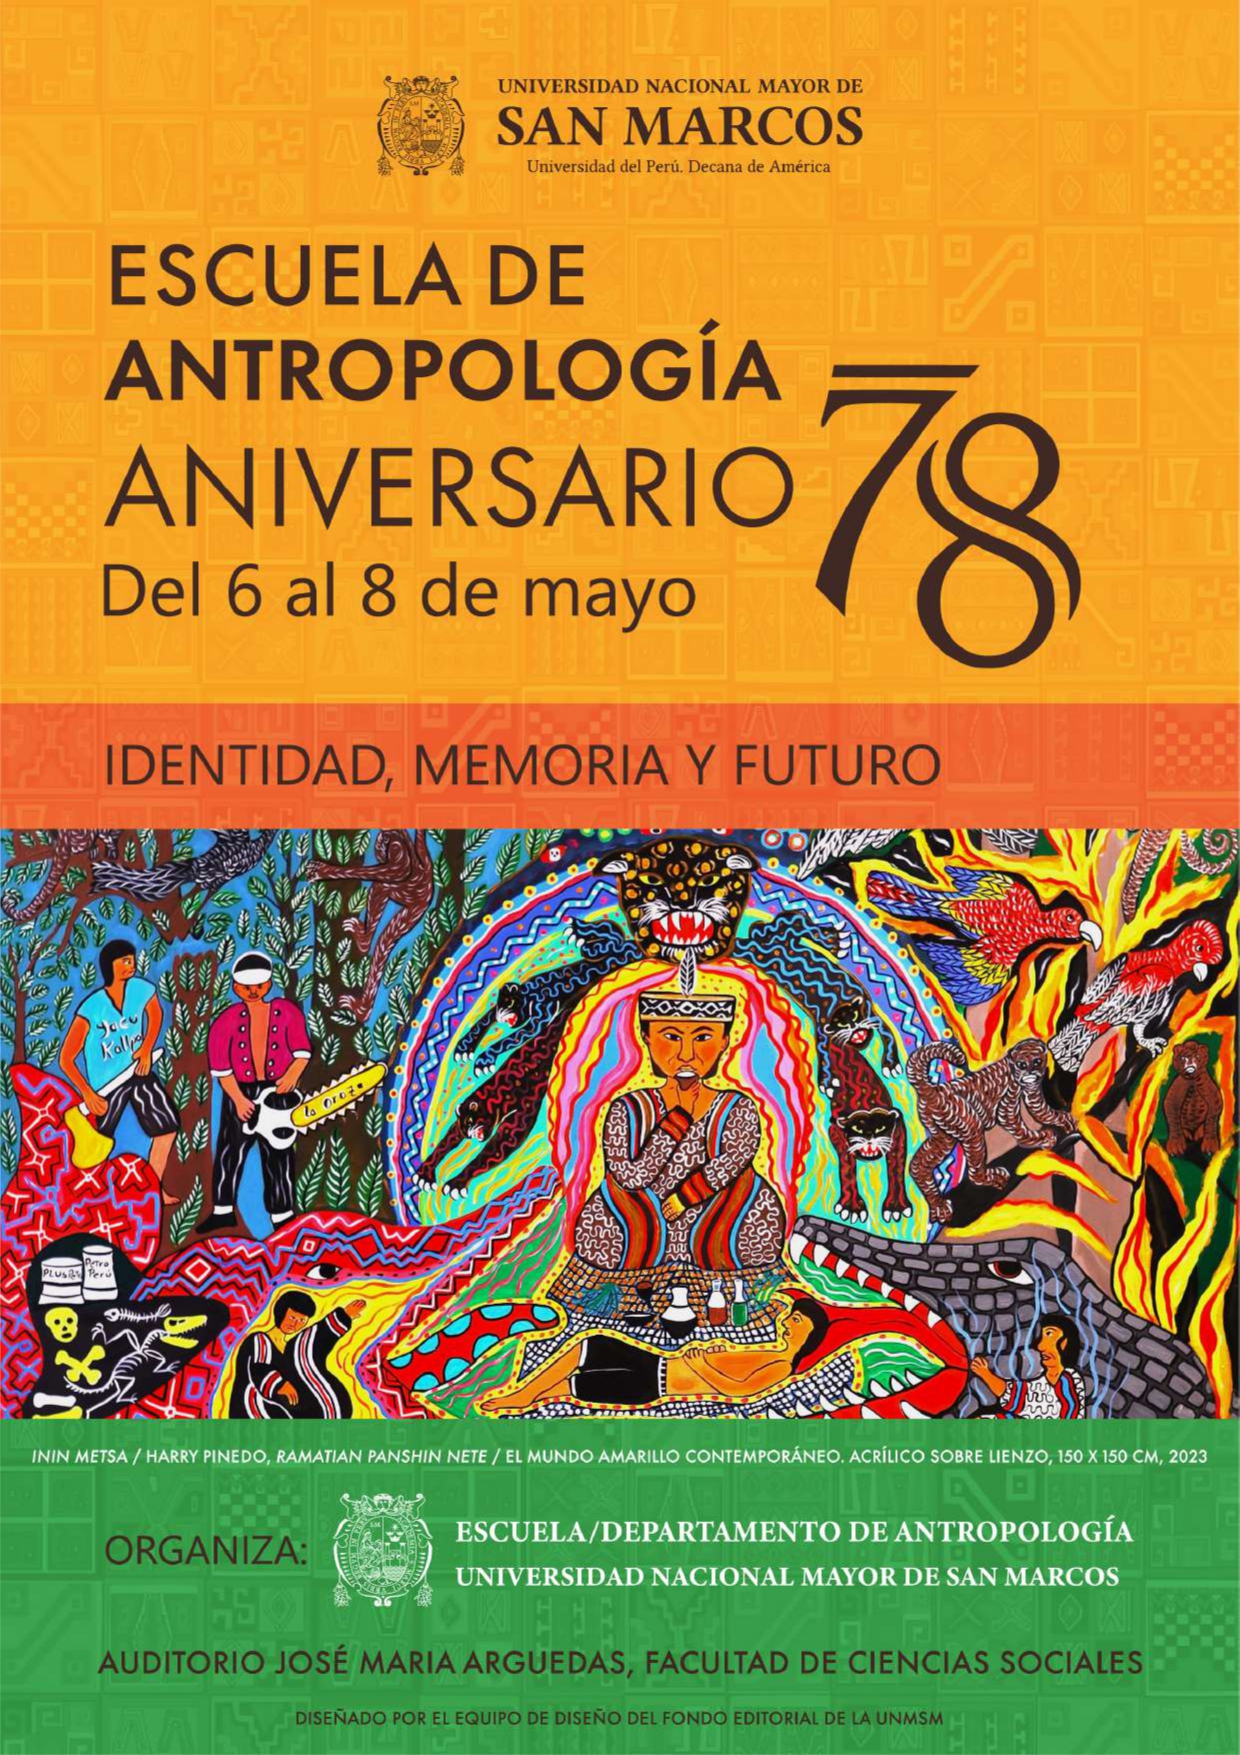 ¡Celebremos juntos el 78º Aniversario de la Escuela profesional de Antropología! 🎉